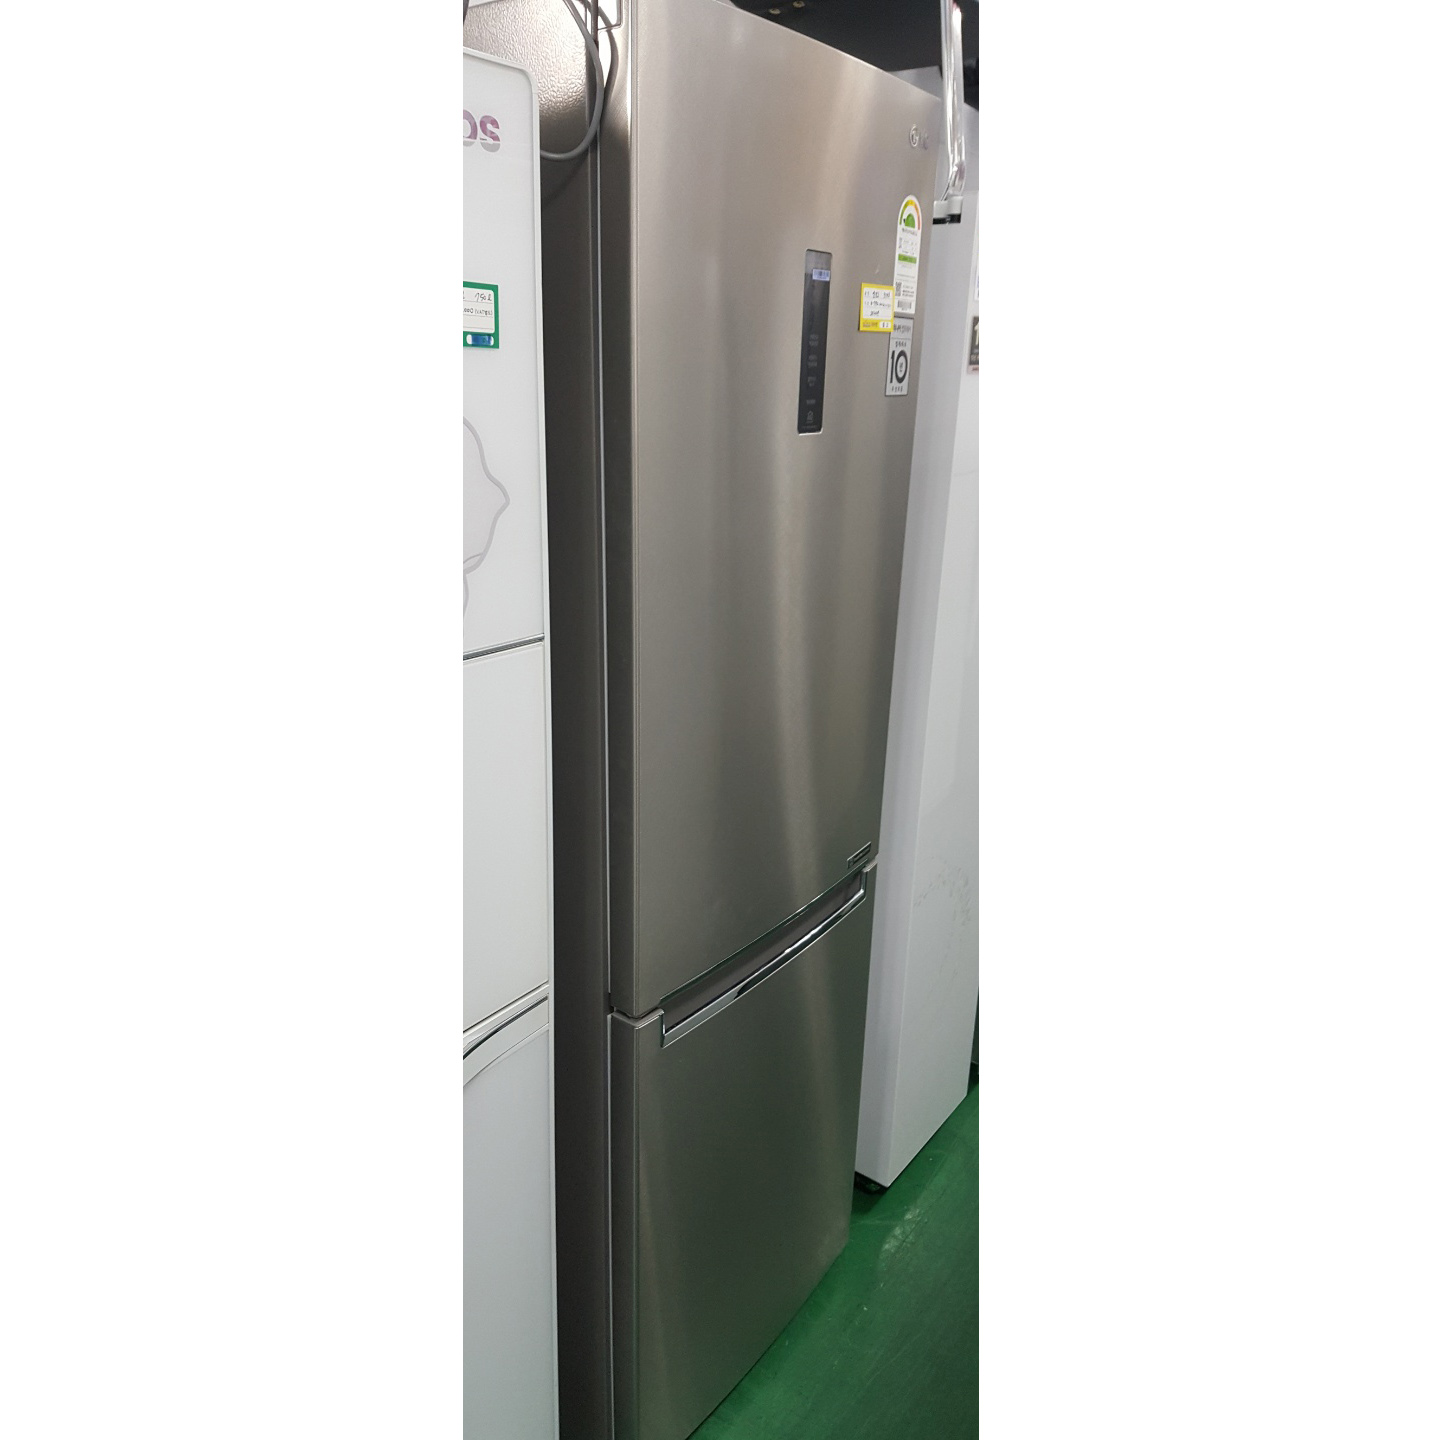 냉장고 339L